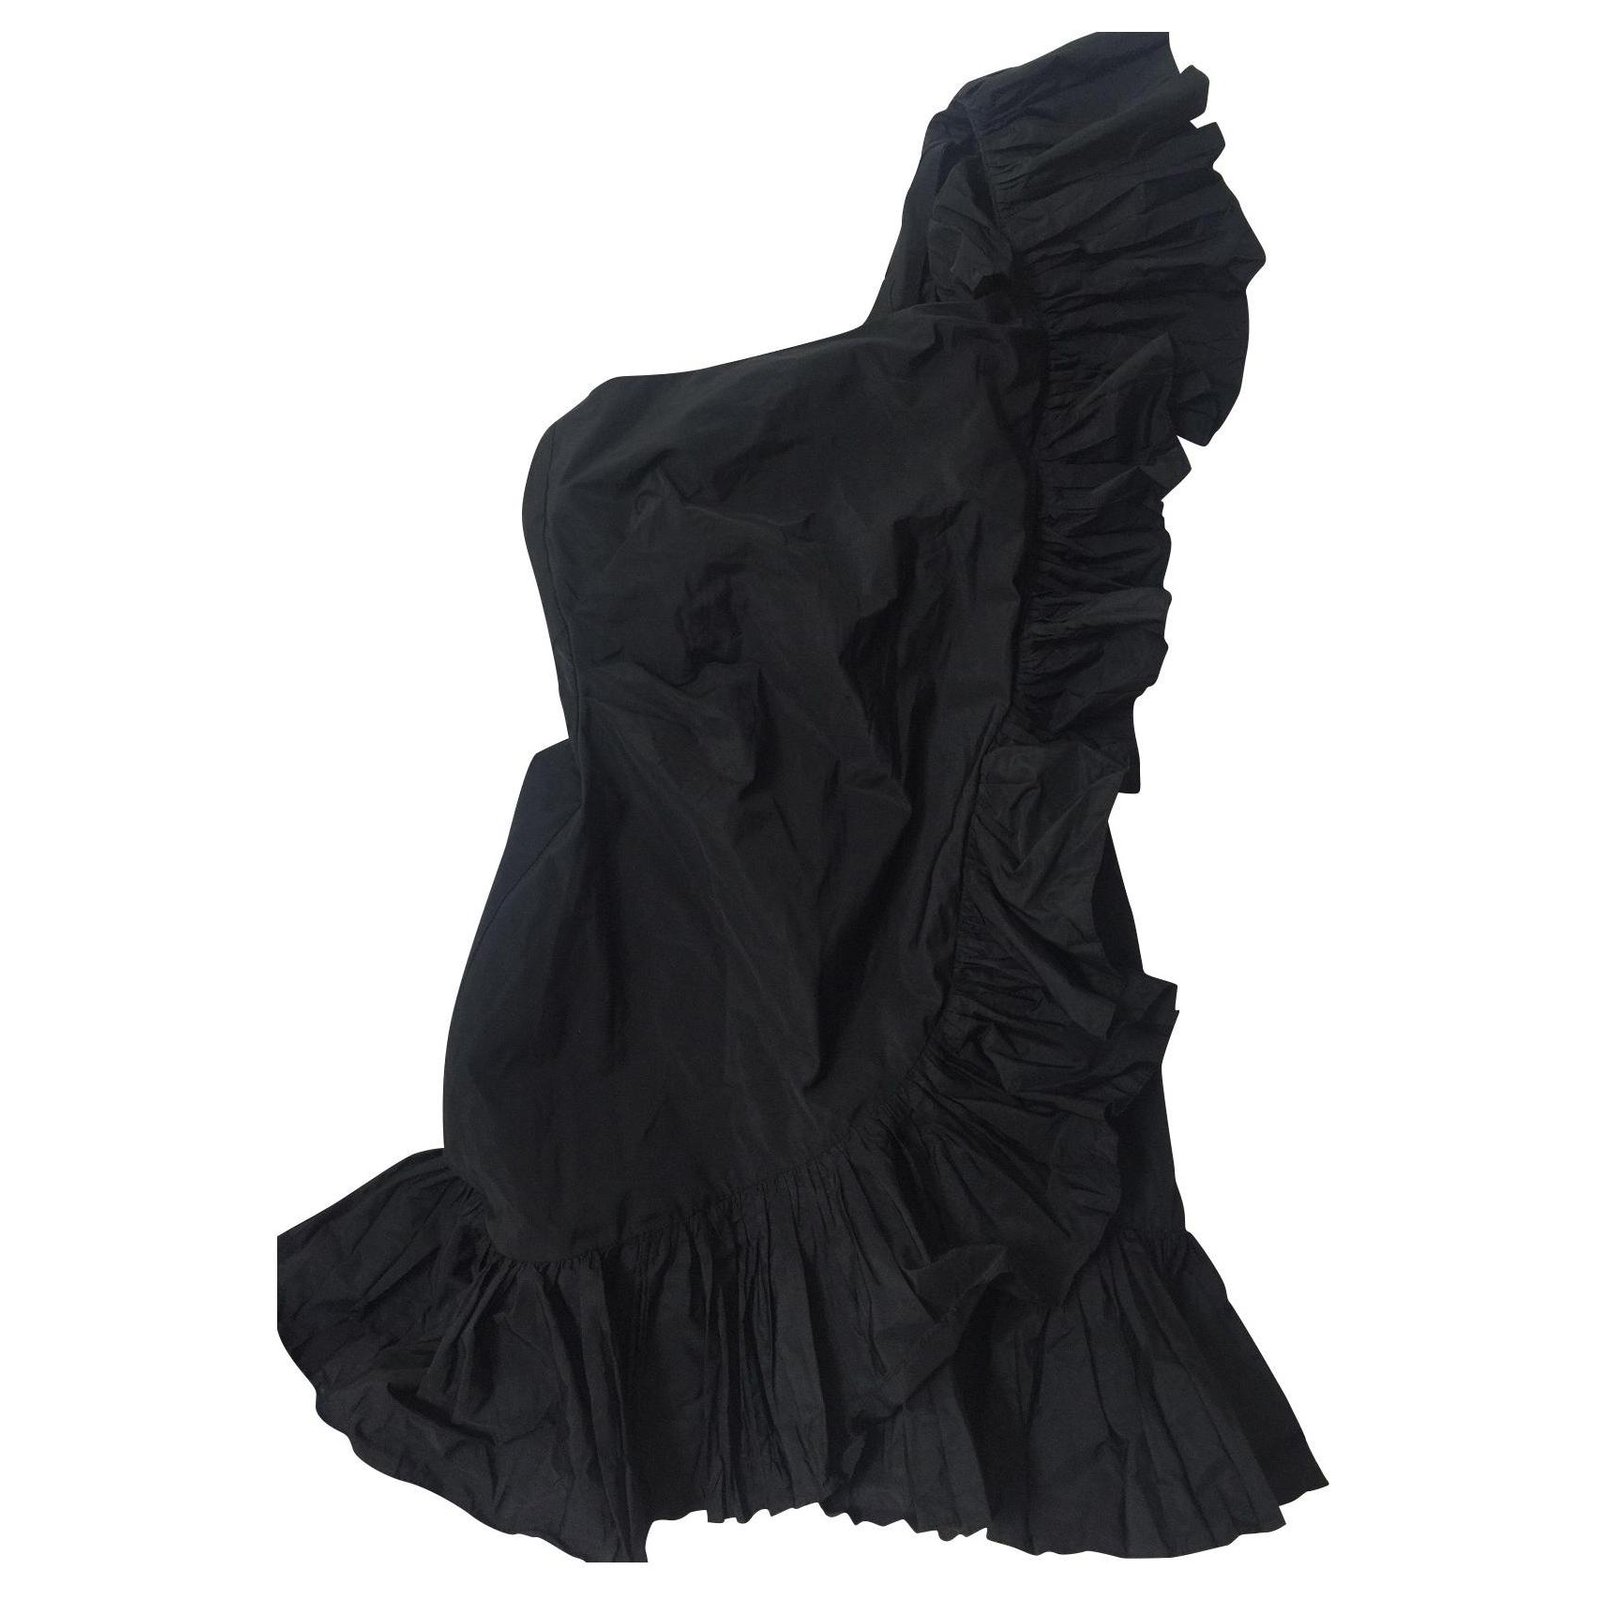 zara black dress 2019